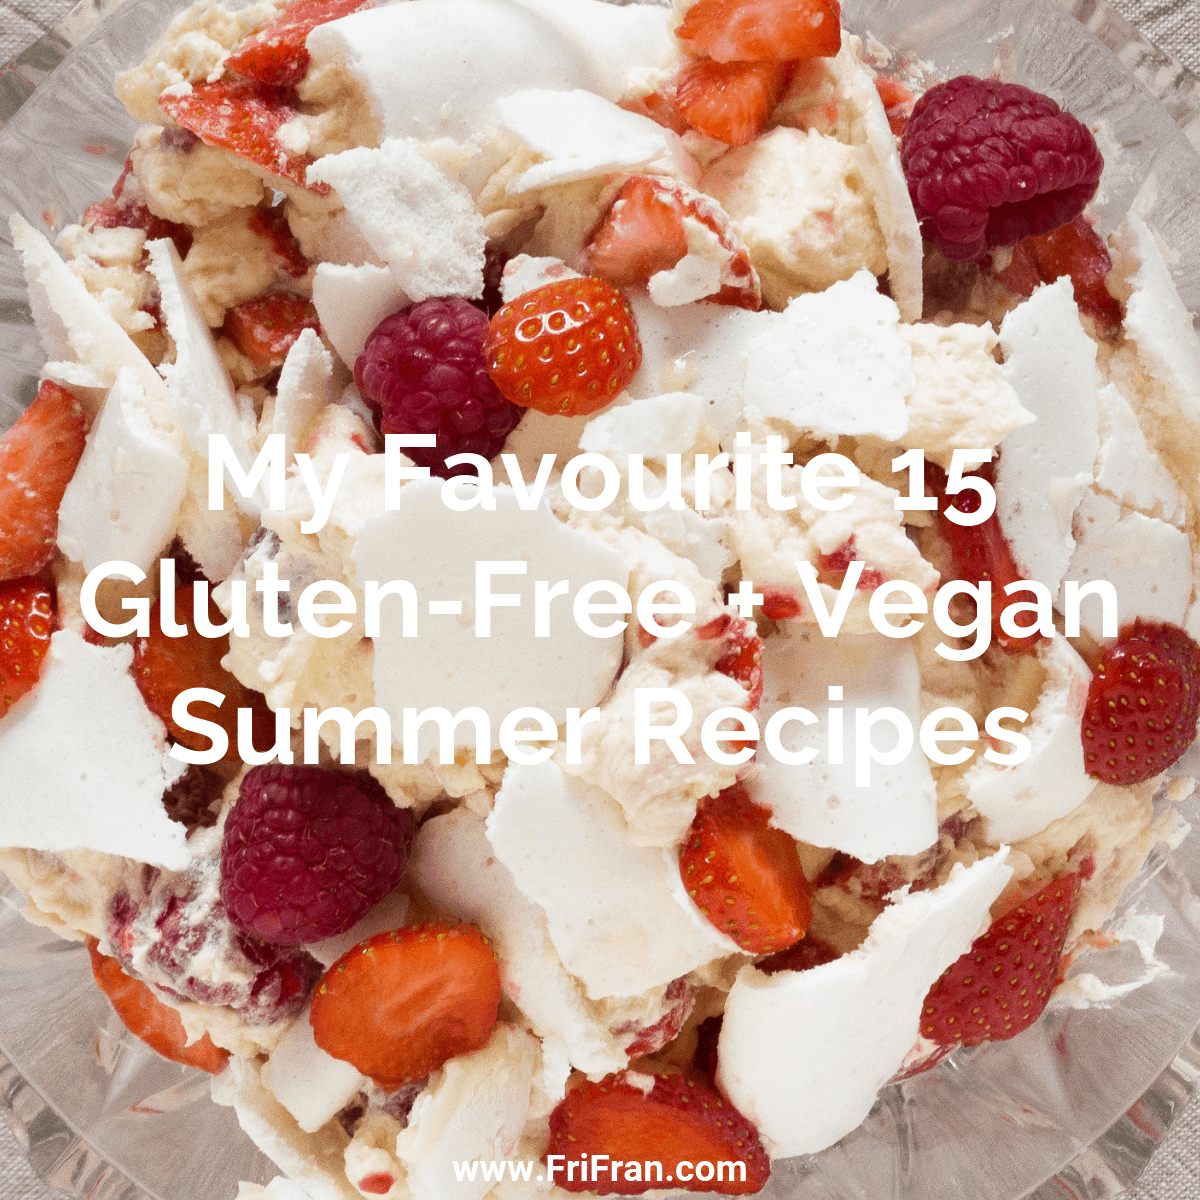 My Favourite Fifteen, Gluten-Free, Vegan Summer Recipes